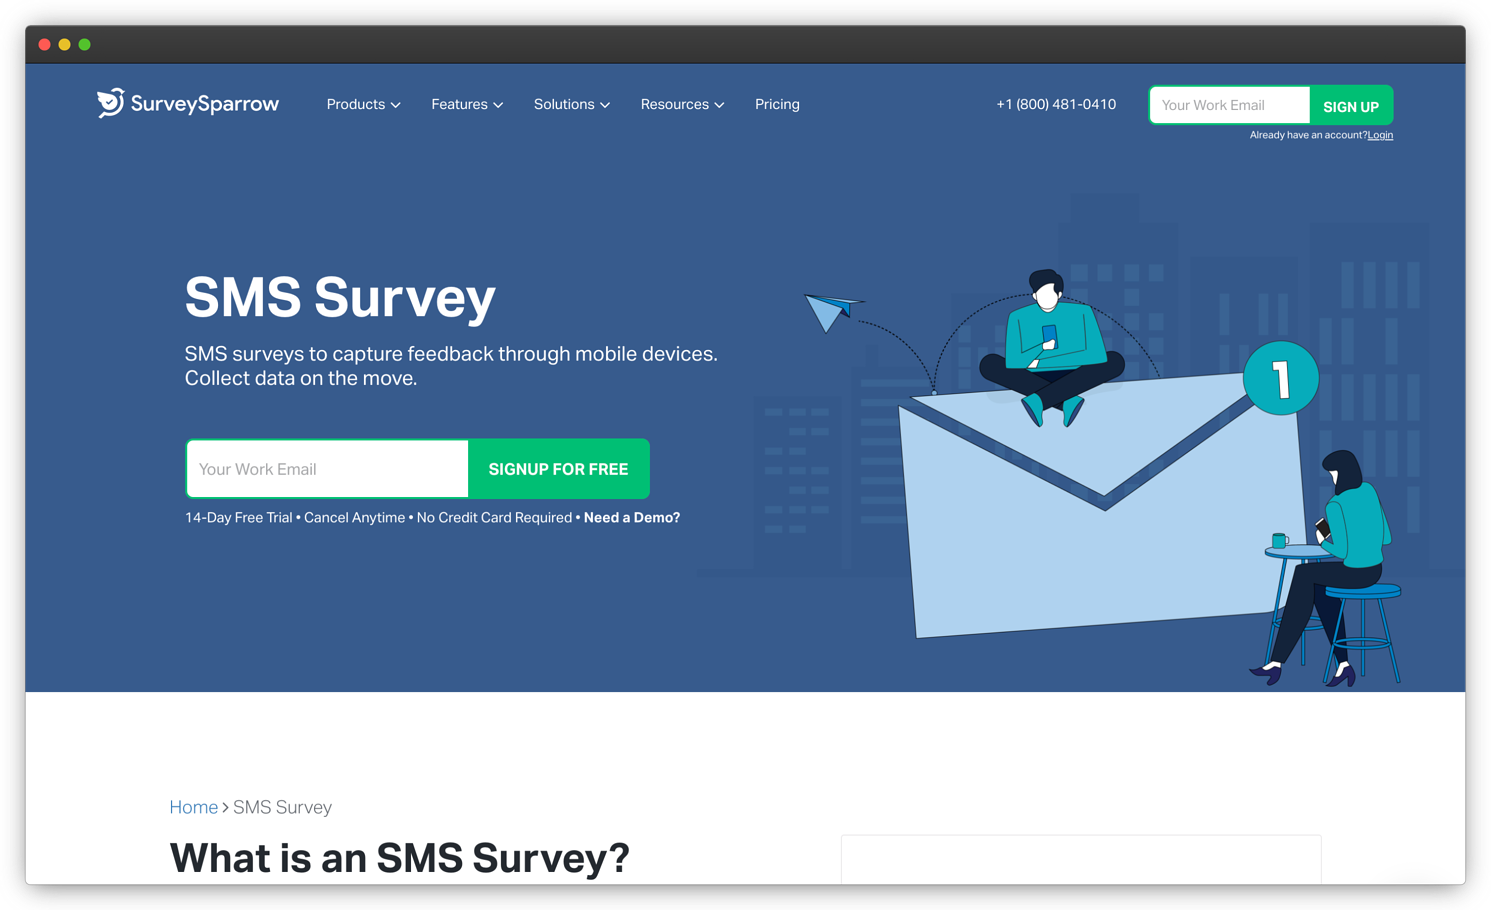 SMS survey